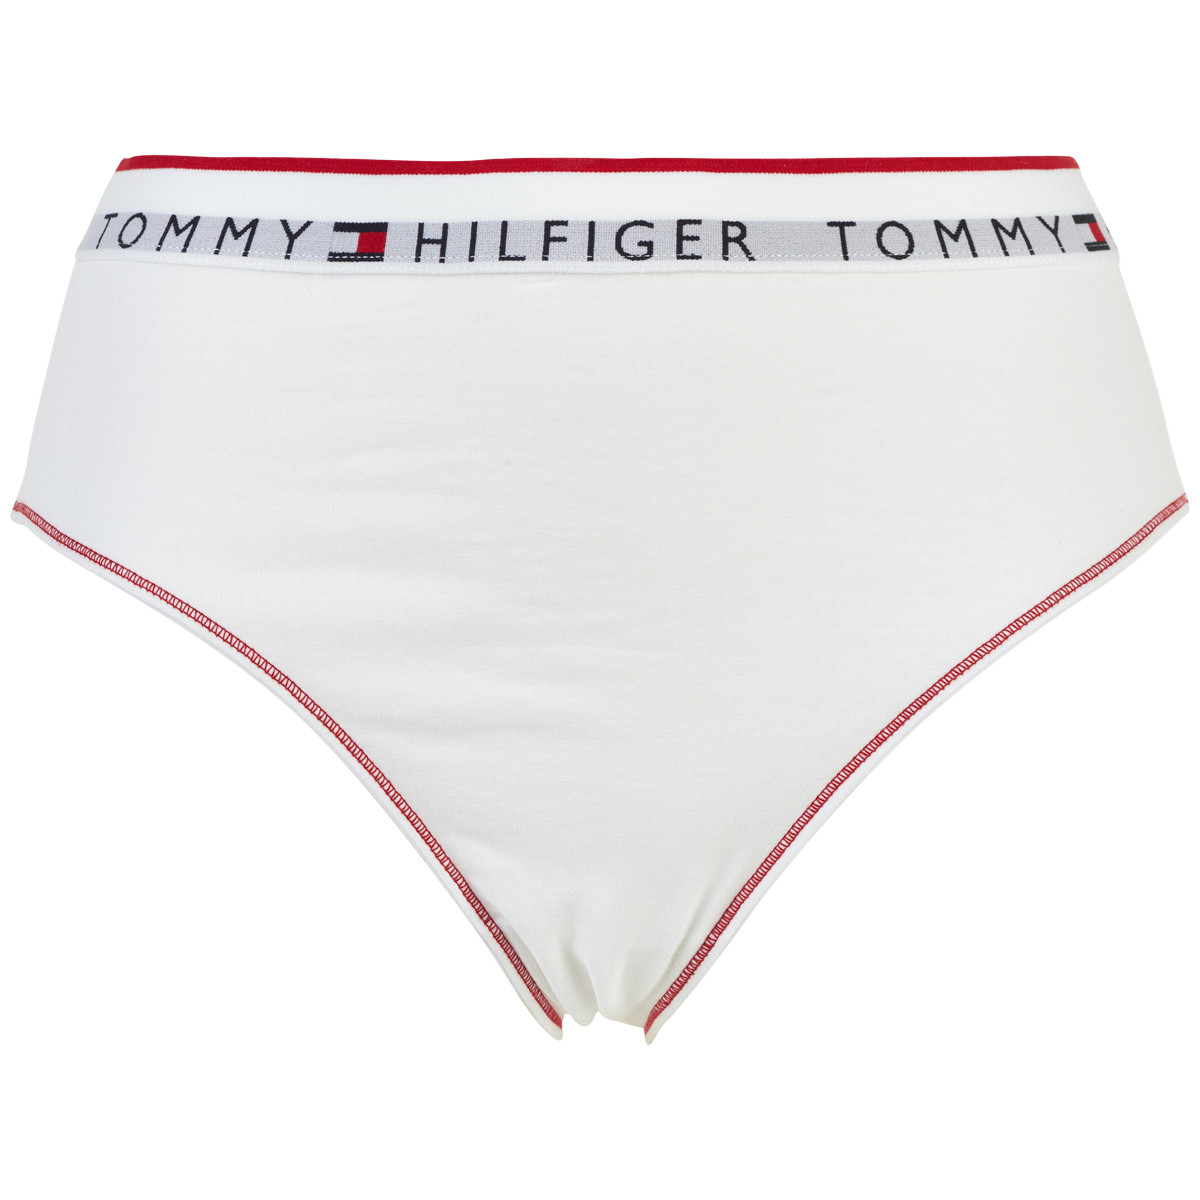 Tommy Hilfiger Lingeri Tai Trusse, Farve: Hvid, Størrelse: XS, Dame